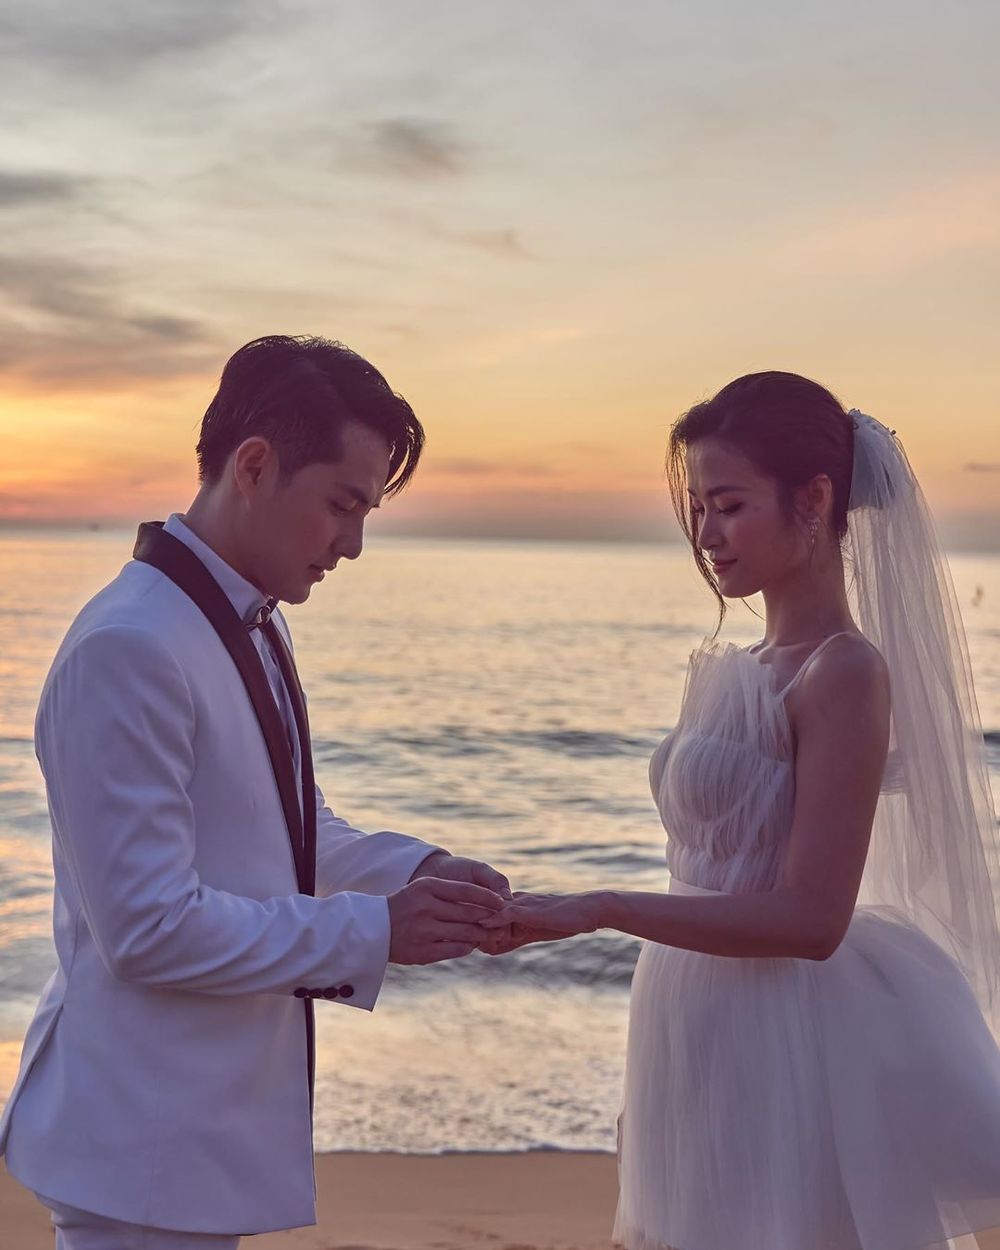  
Đông Nhi - Ông Cao Thắng chính thức là vợ chồng từ cuối năm 2019. Ảnh: Instagram